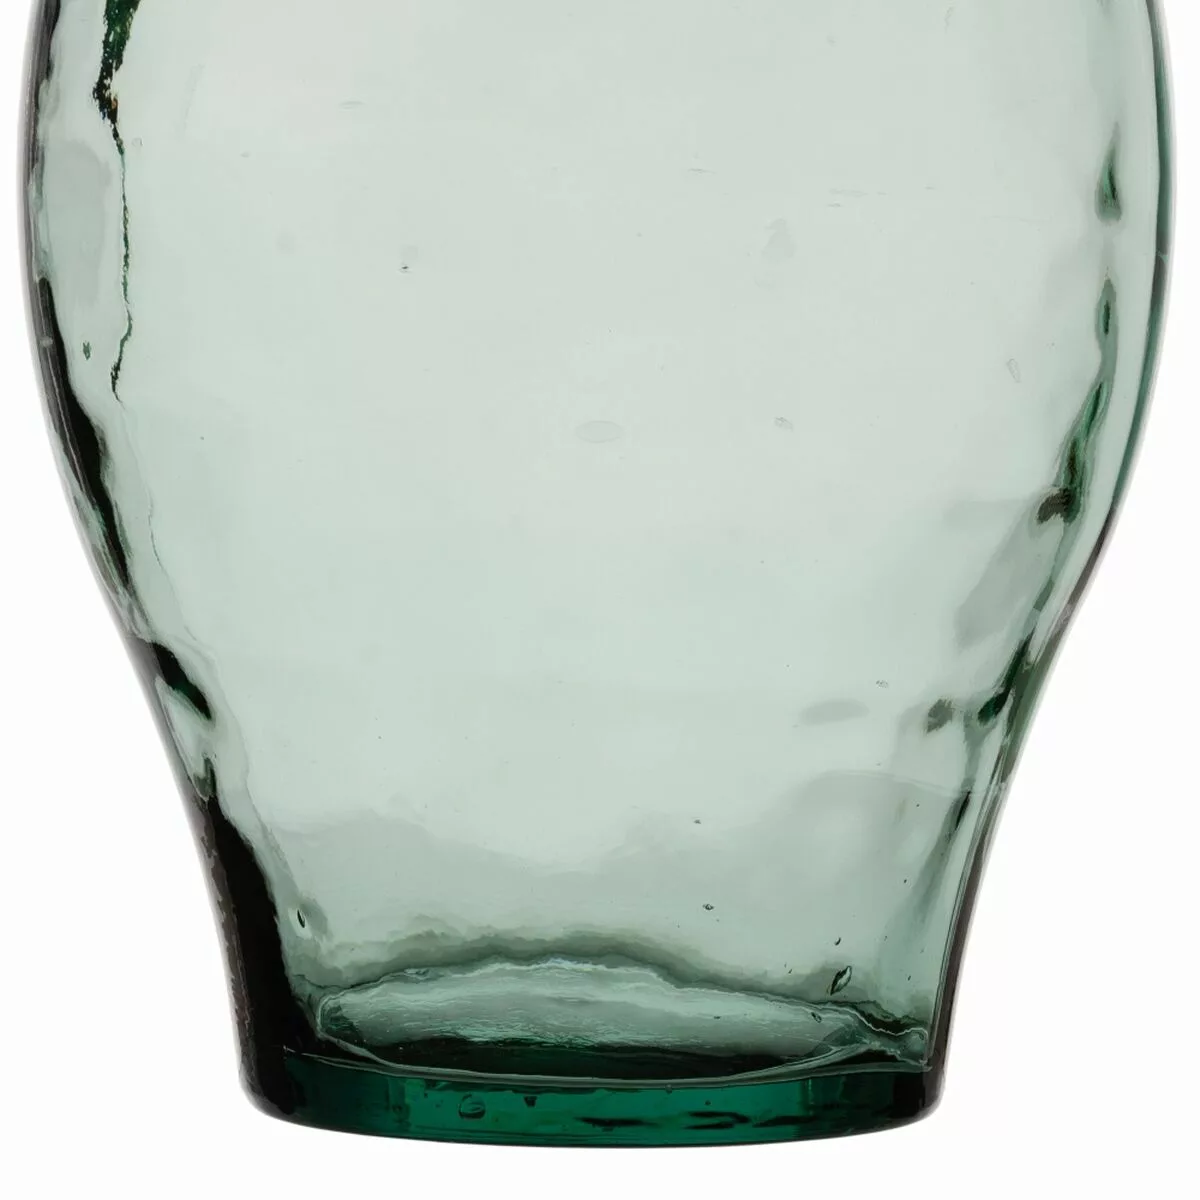 Vase Recyceltes Glas Grün 28 X 28 X 60 Cm günstig online kaufen